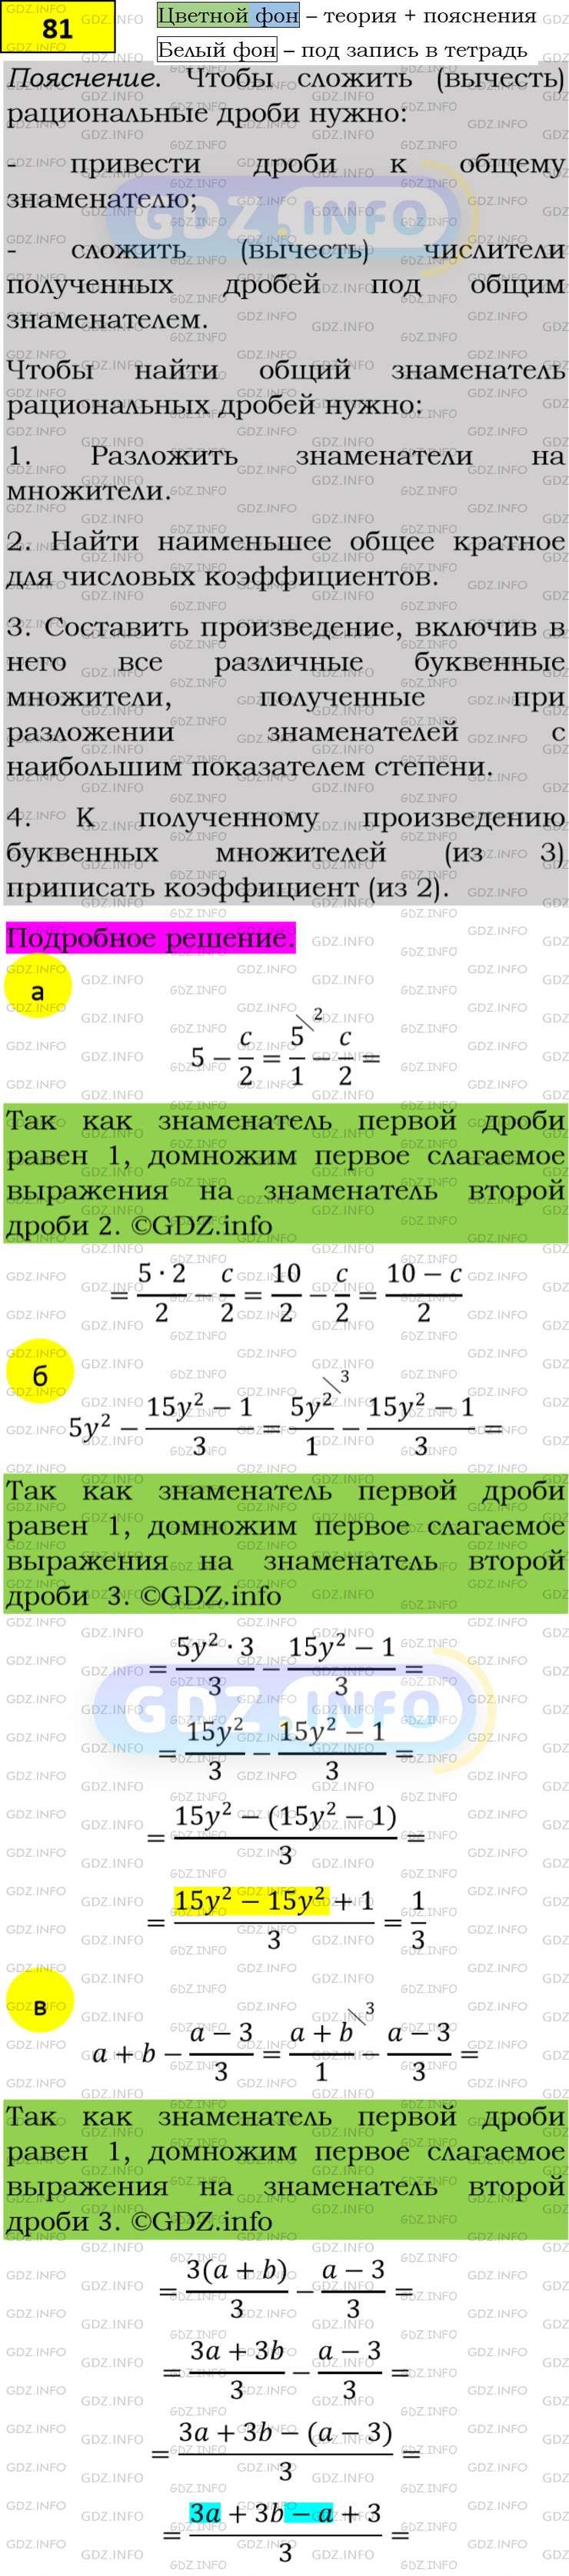 Фото подробного решения: Номер задания №81 из ГДЗ по Алгебре 8 класс: Макарычев Ю.Н.